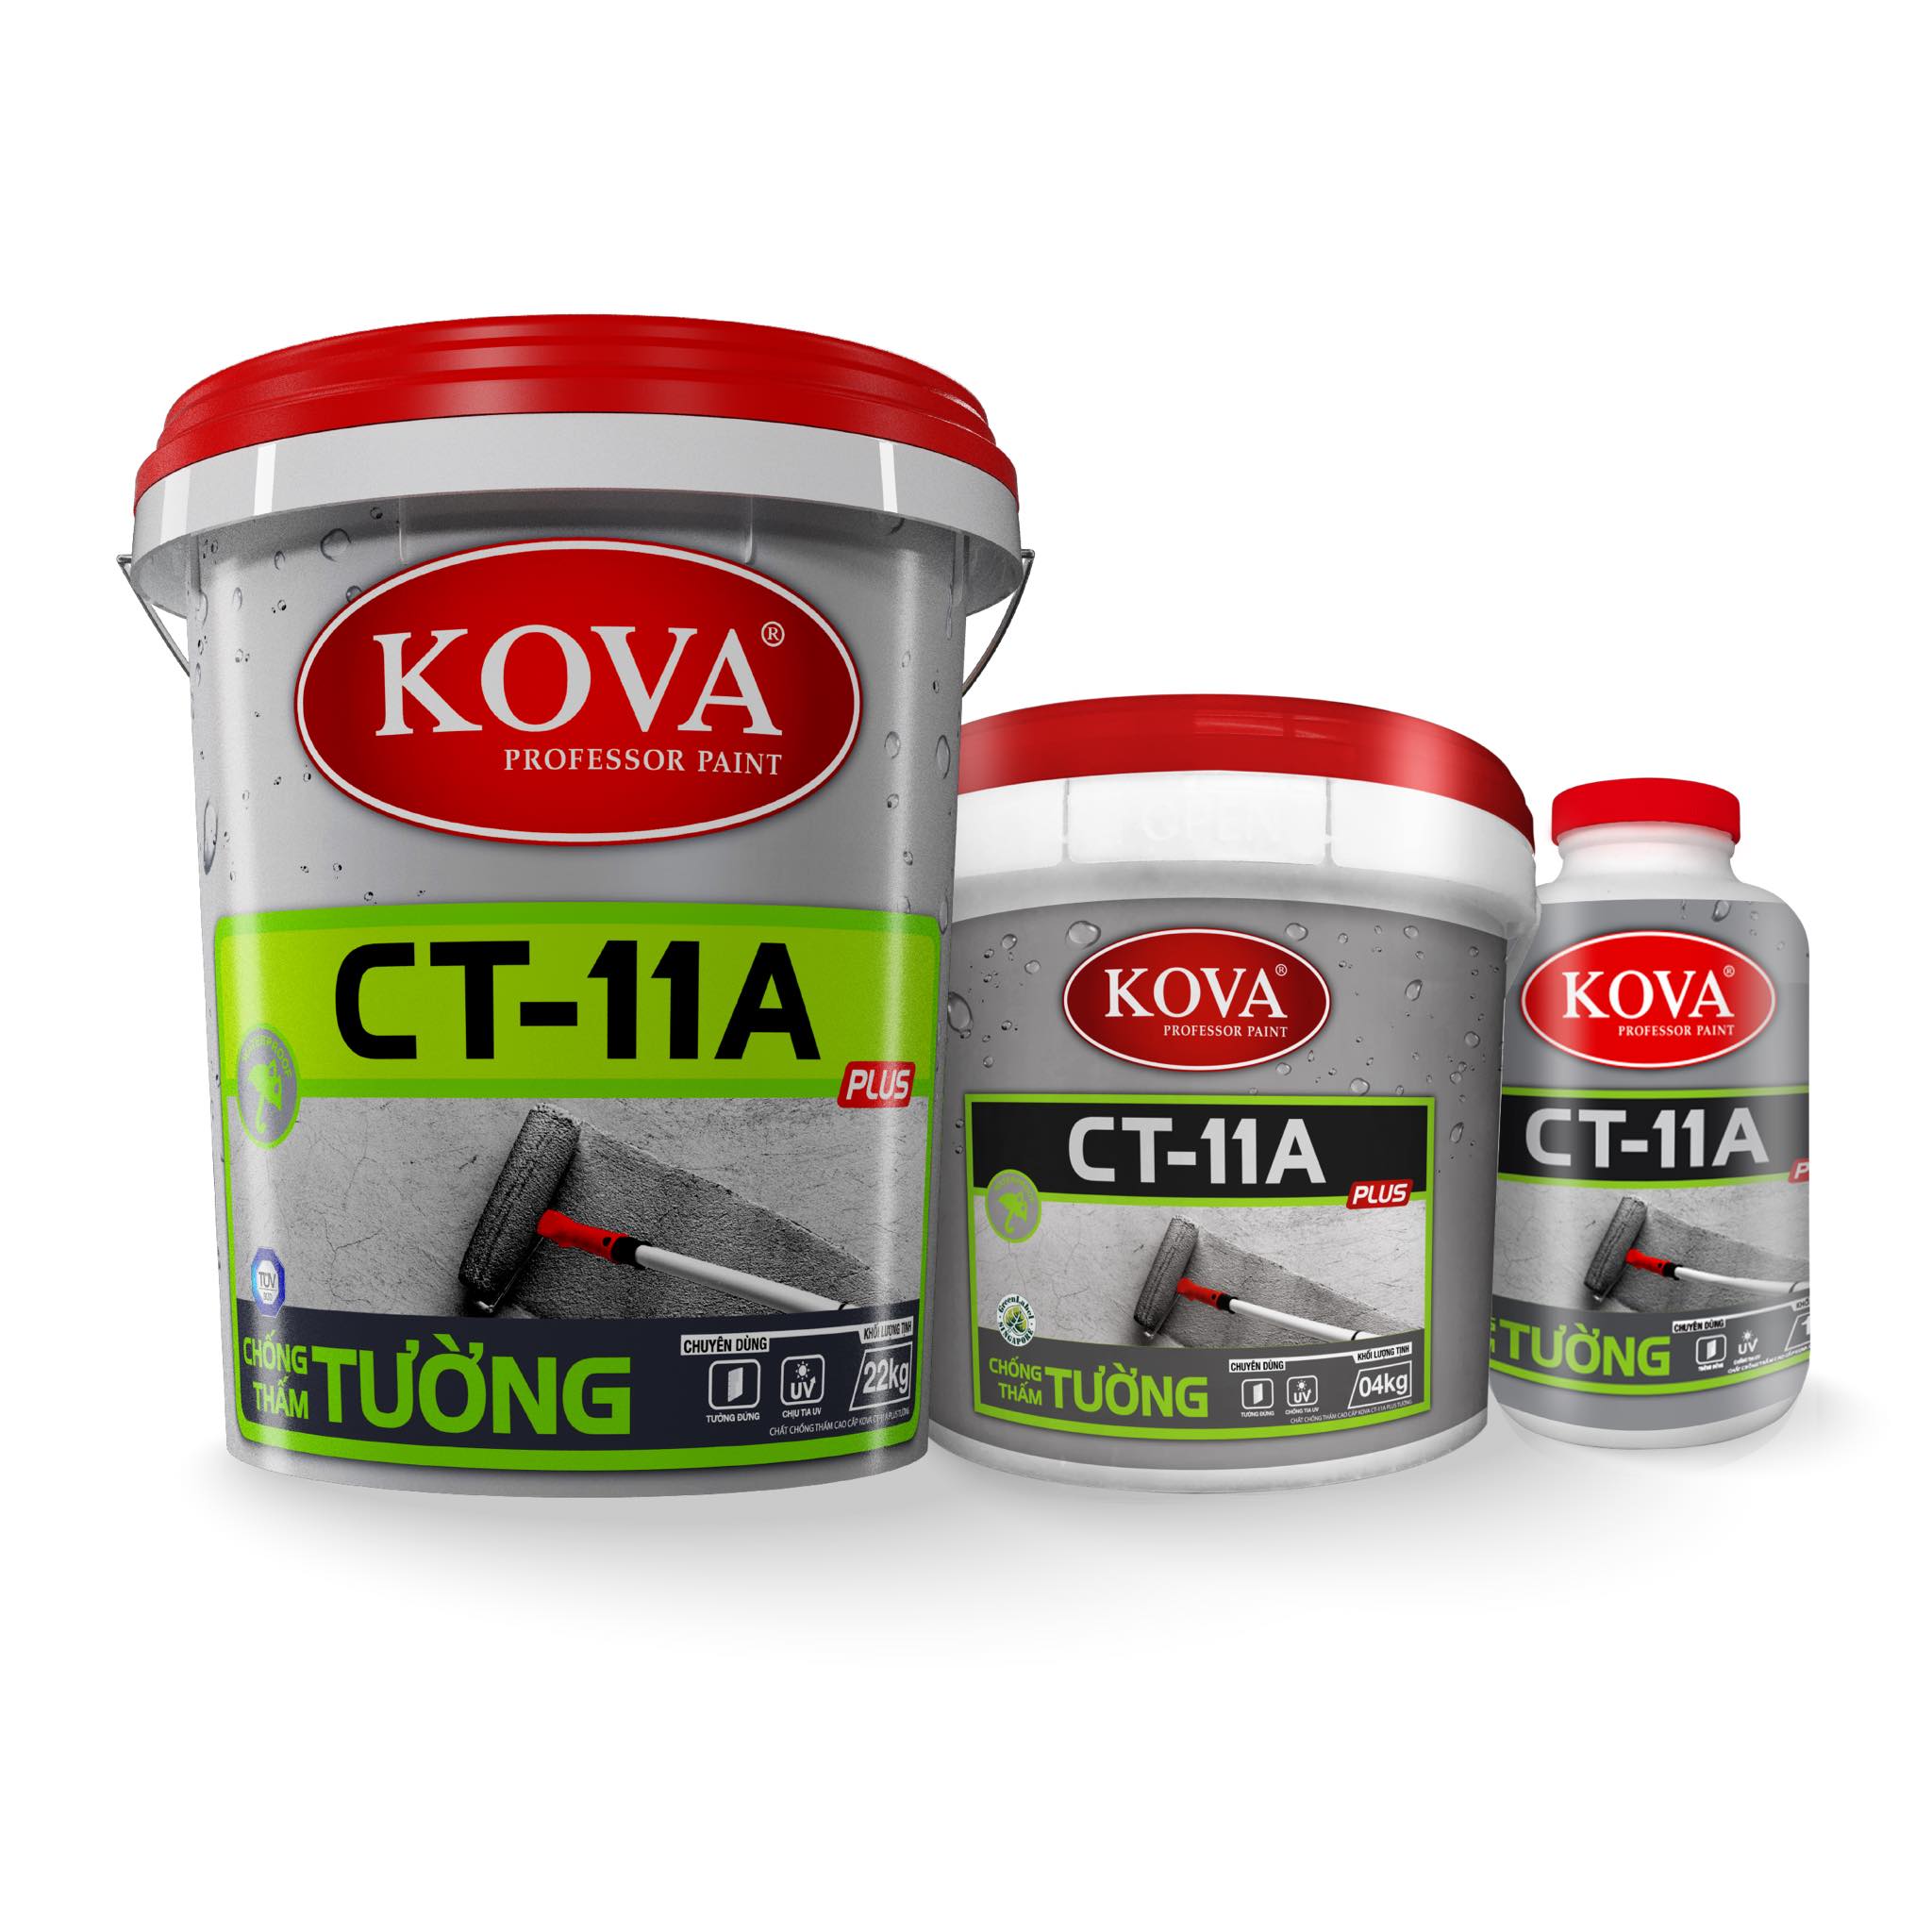 Các loại sơn Kova chống thấm tiêu biểu được lựa chọn nhiều nhất hiện nay như: Sơn chống thấm pha xi măng Kova CT11A, Sơn chống thấm Kova CT11B, CT14, Sơn chịu ẩm Kova SK6…